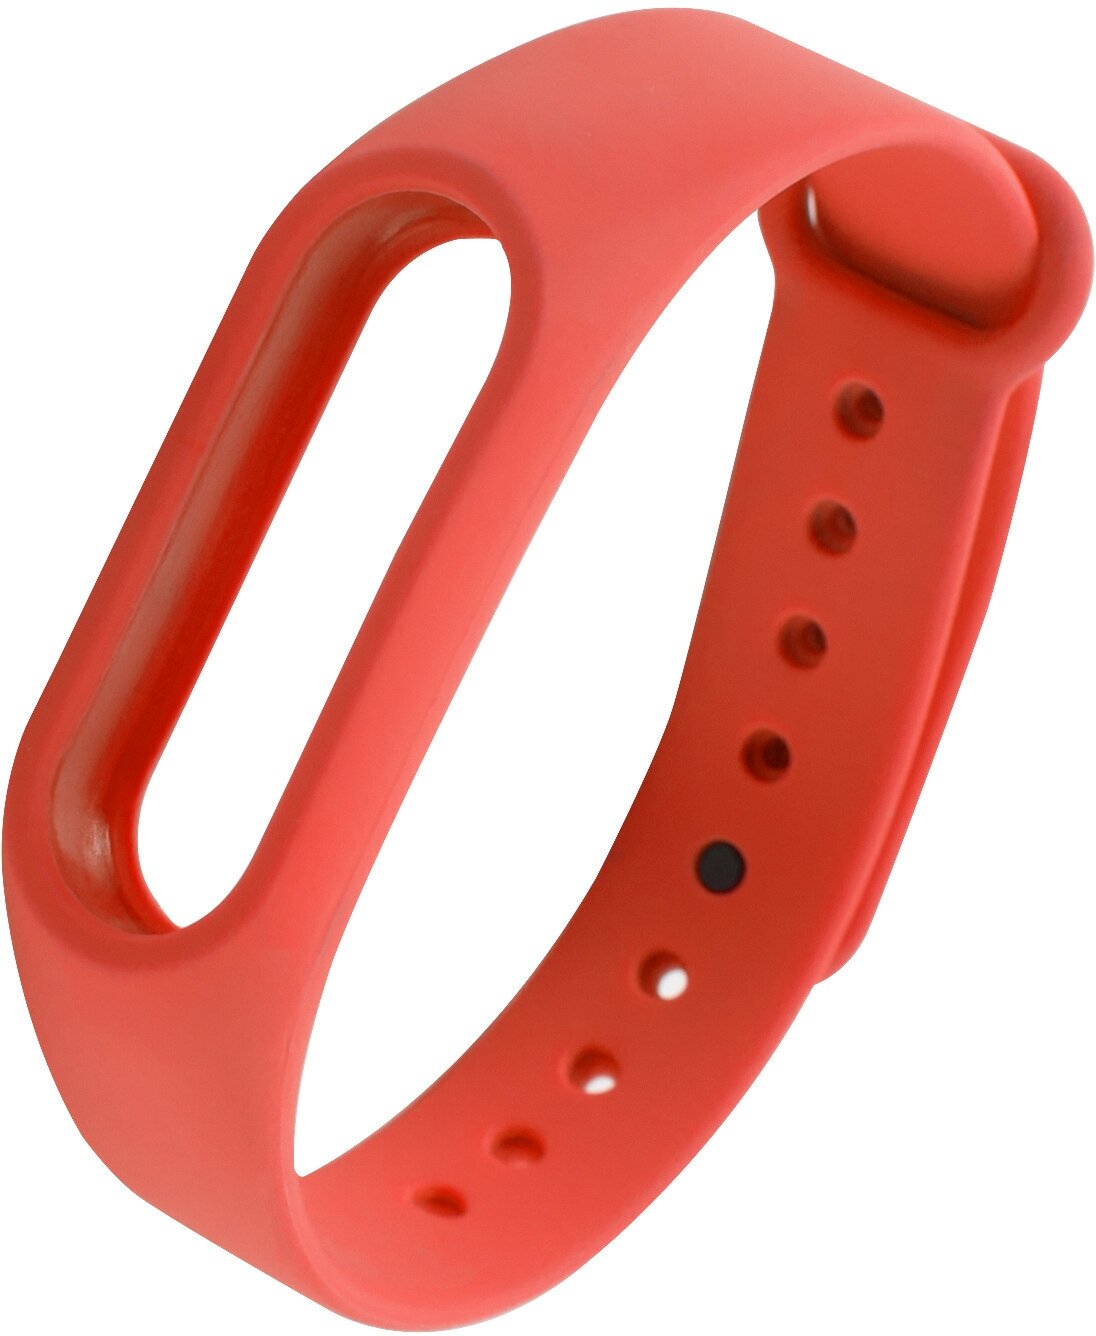 Ремешок для Xiaomi Mi Band 2/Ремешок для фитнес-браслета/Ремешок для часов силиконовый, красный